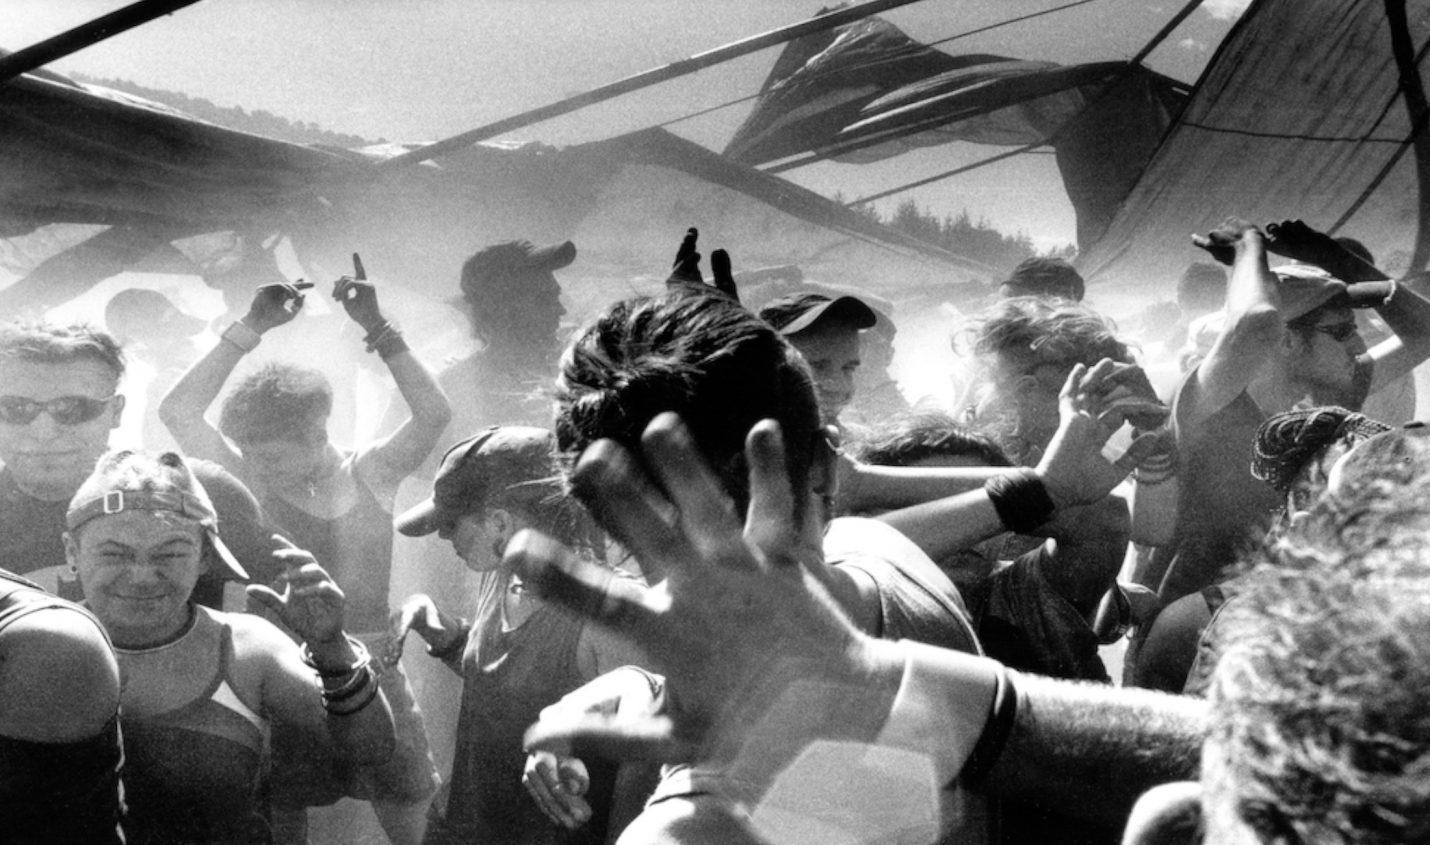 Dirty Dancing: Bildband über die Free-Party-Szene der späten 90er